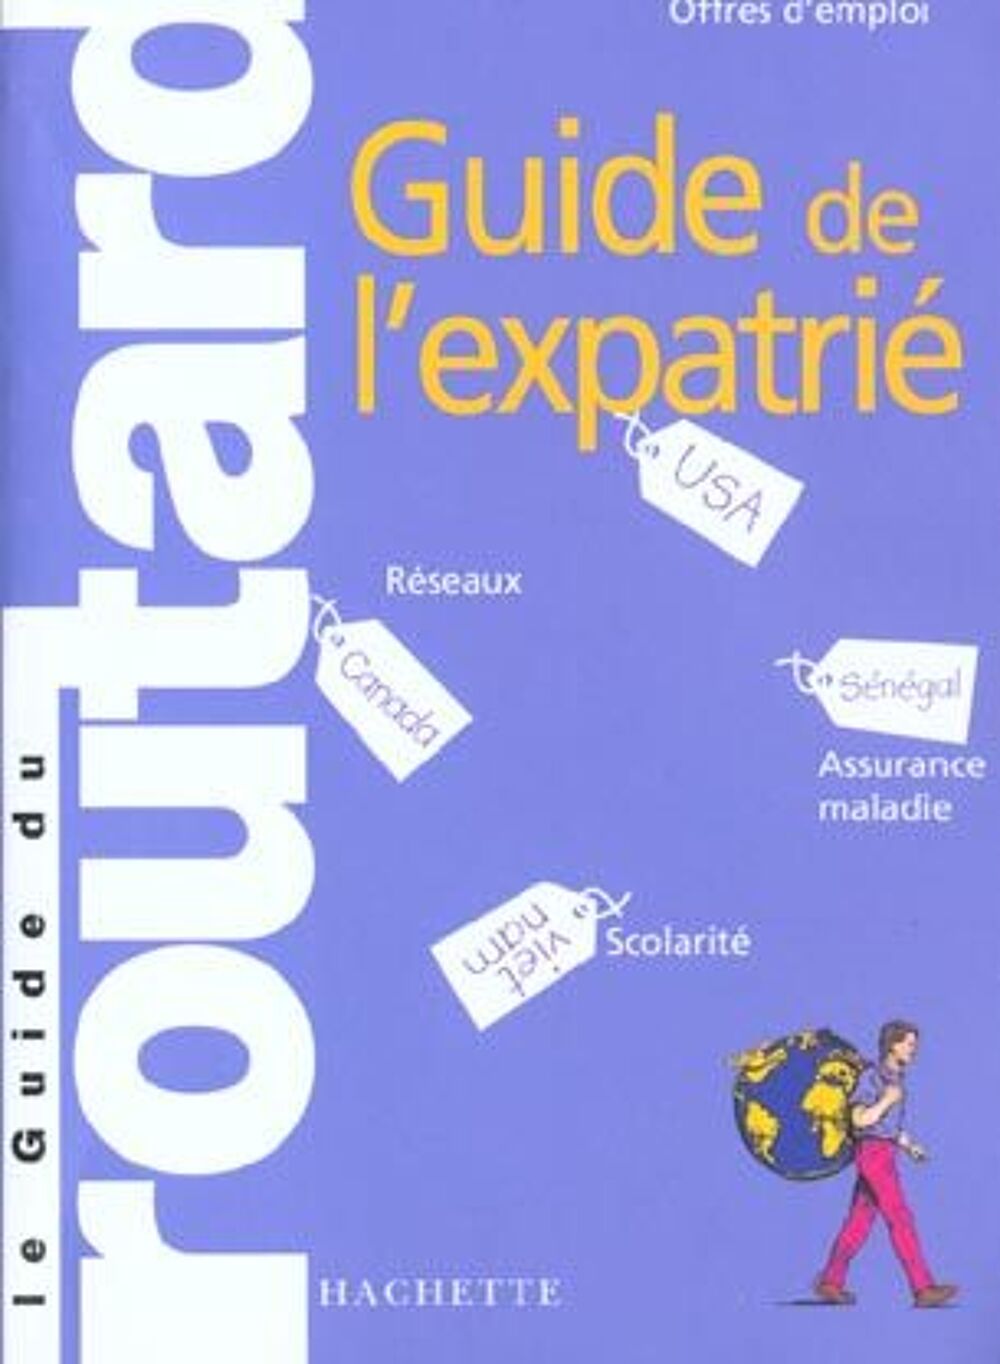 Guide de l'expatrie ; edition 2002-2003 Livres et BD